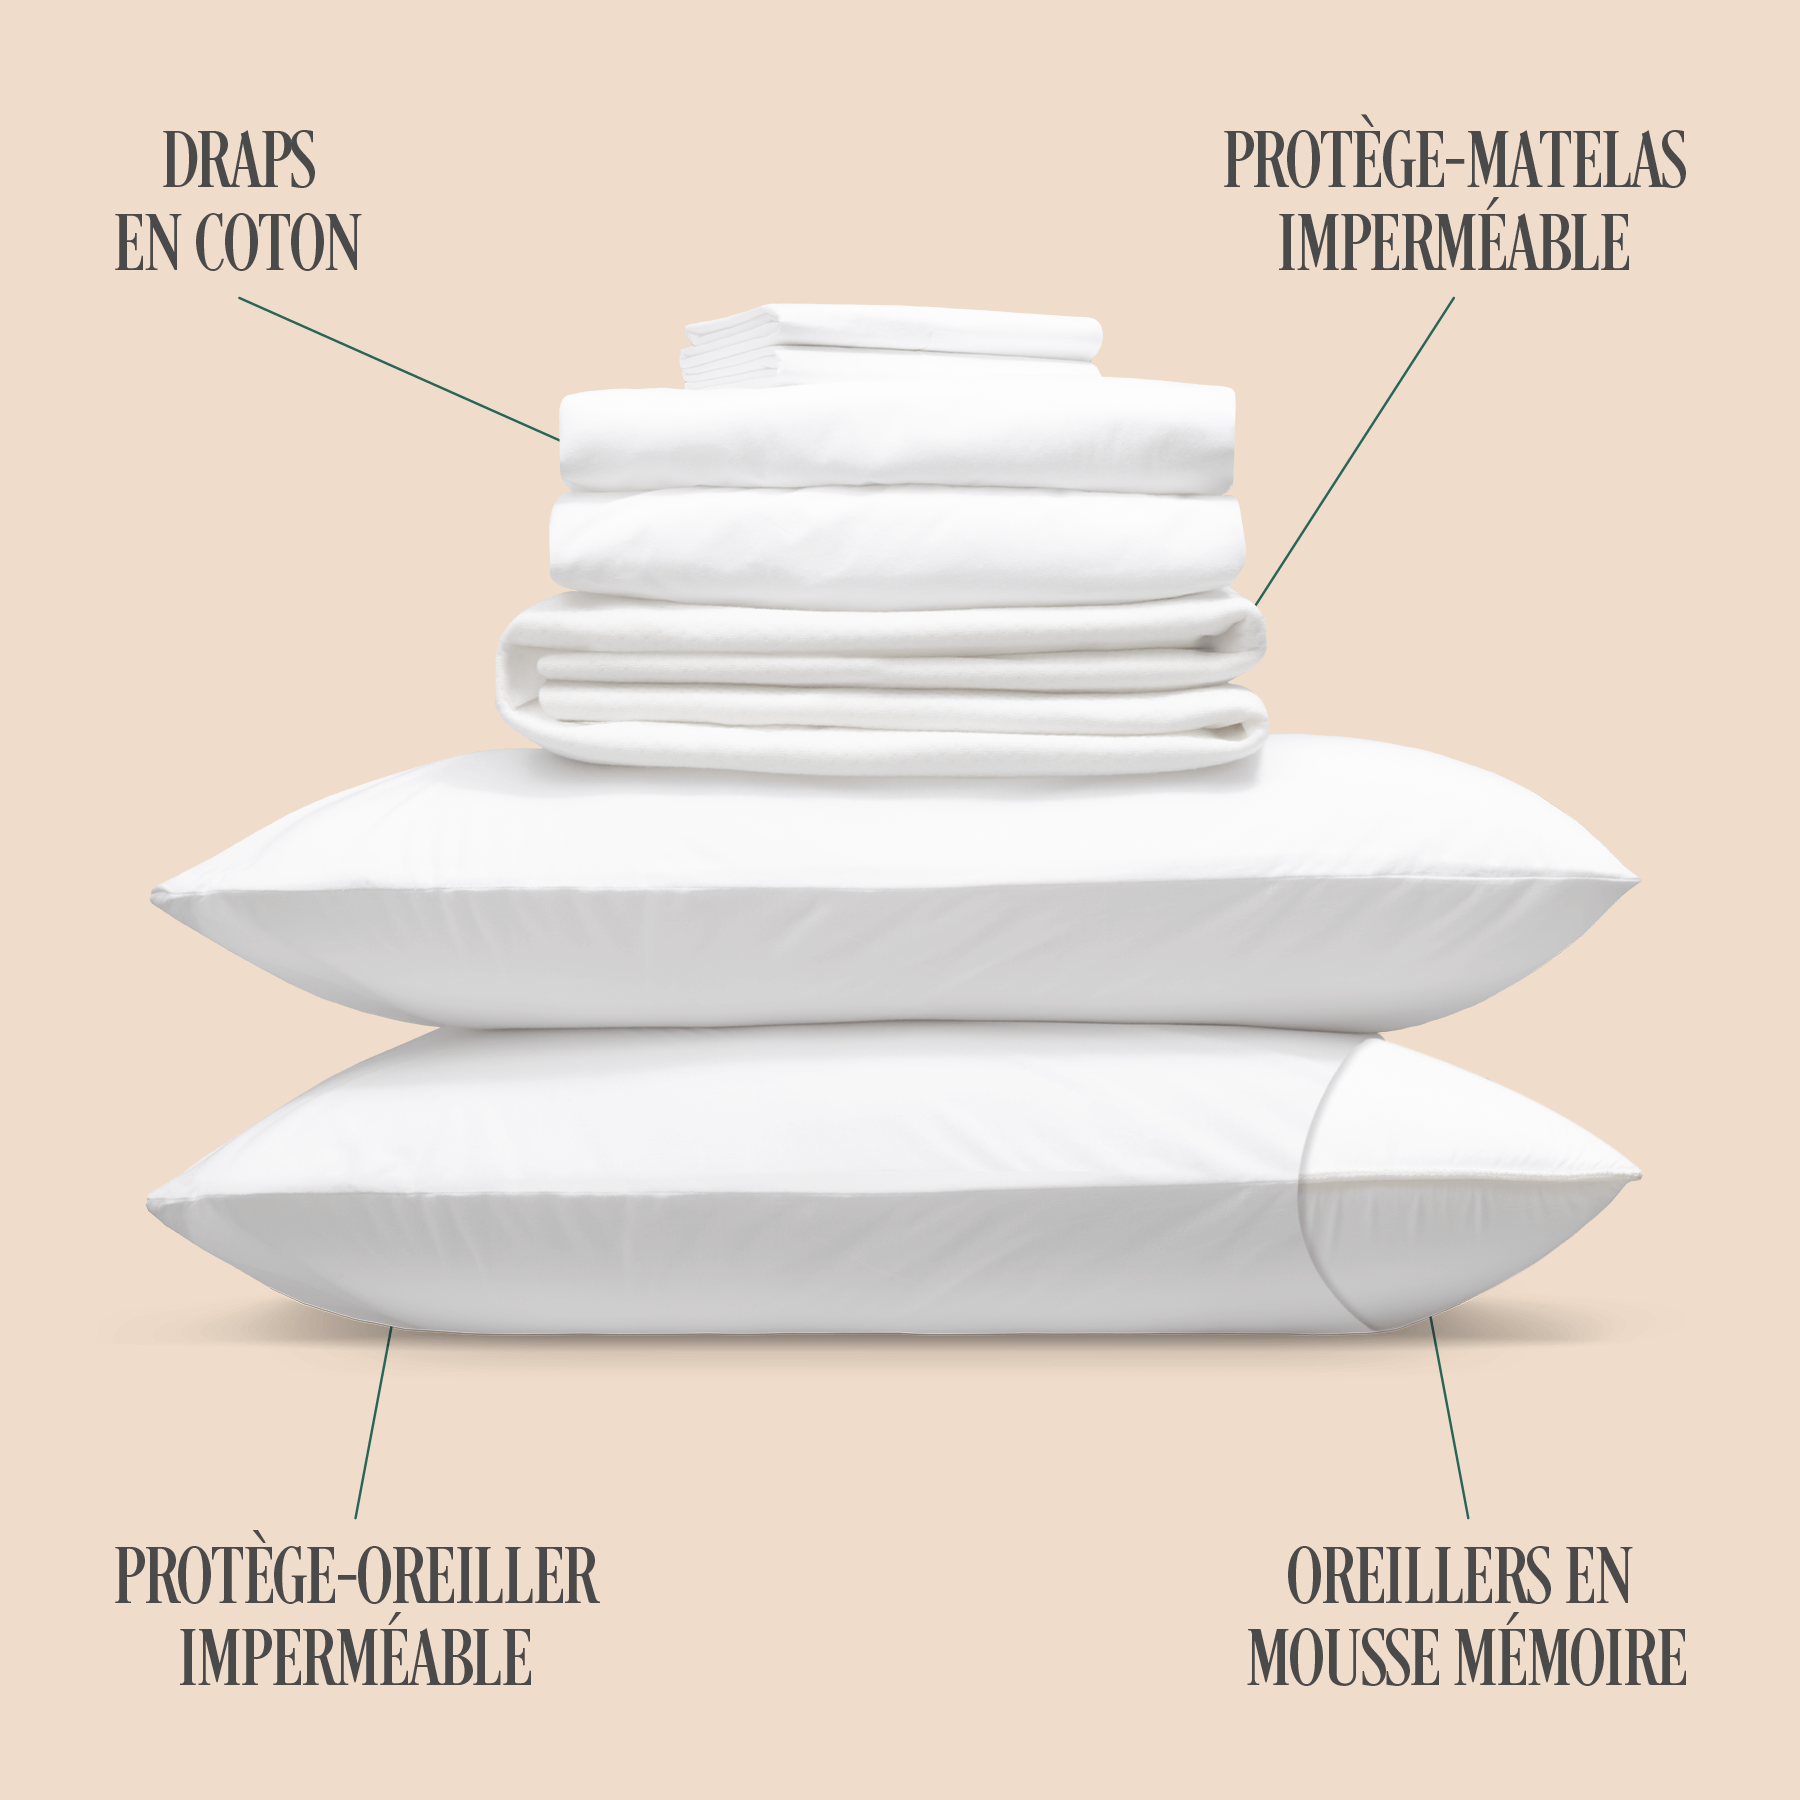 Le pack de confort gratuit comprend des draps, des oreillers, un protège-matelas et des protège-oreillers.